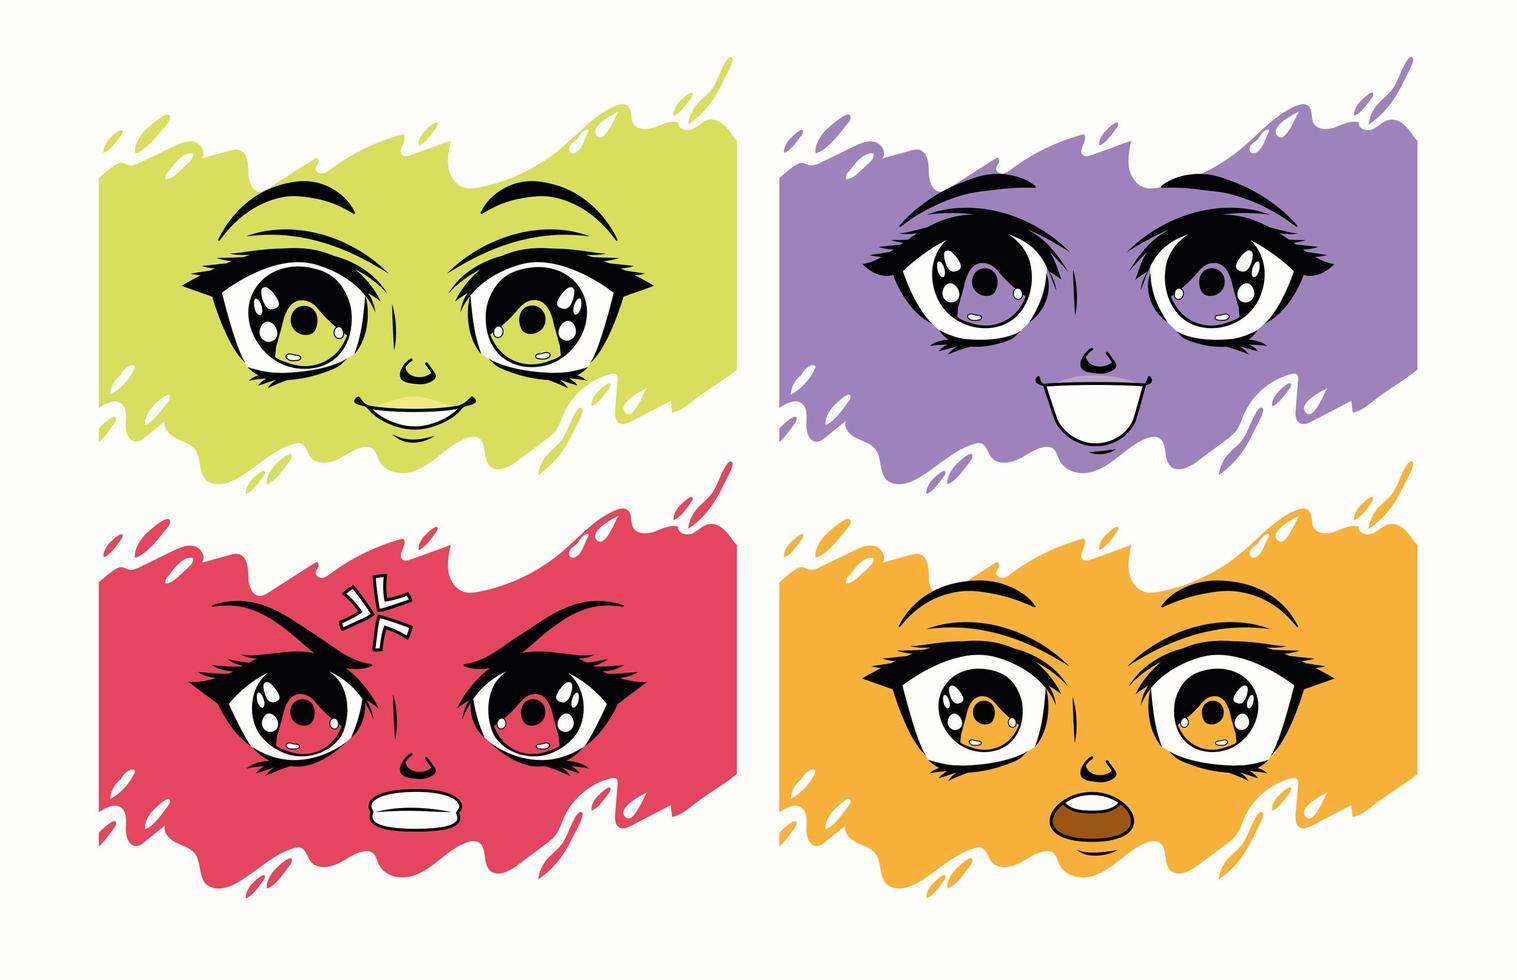 vier manga-emoties gezichten vector